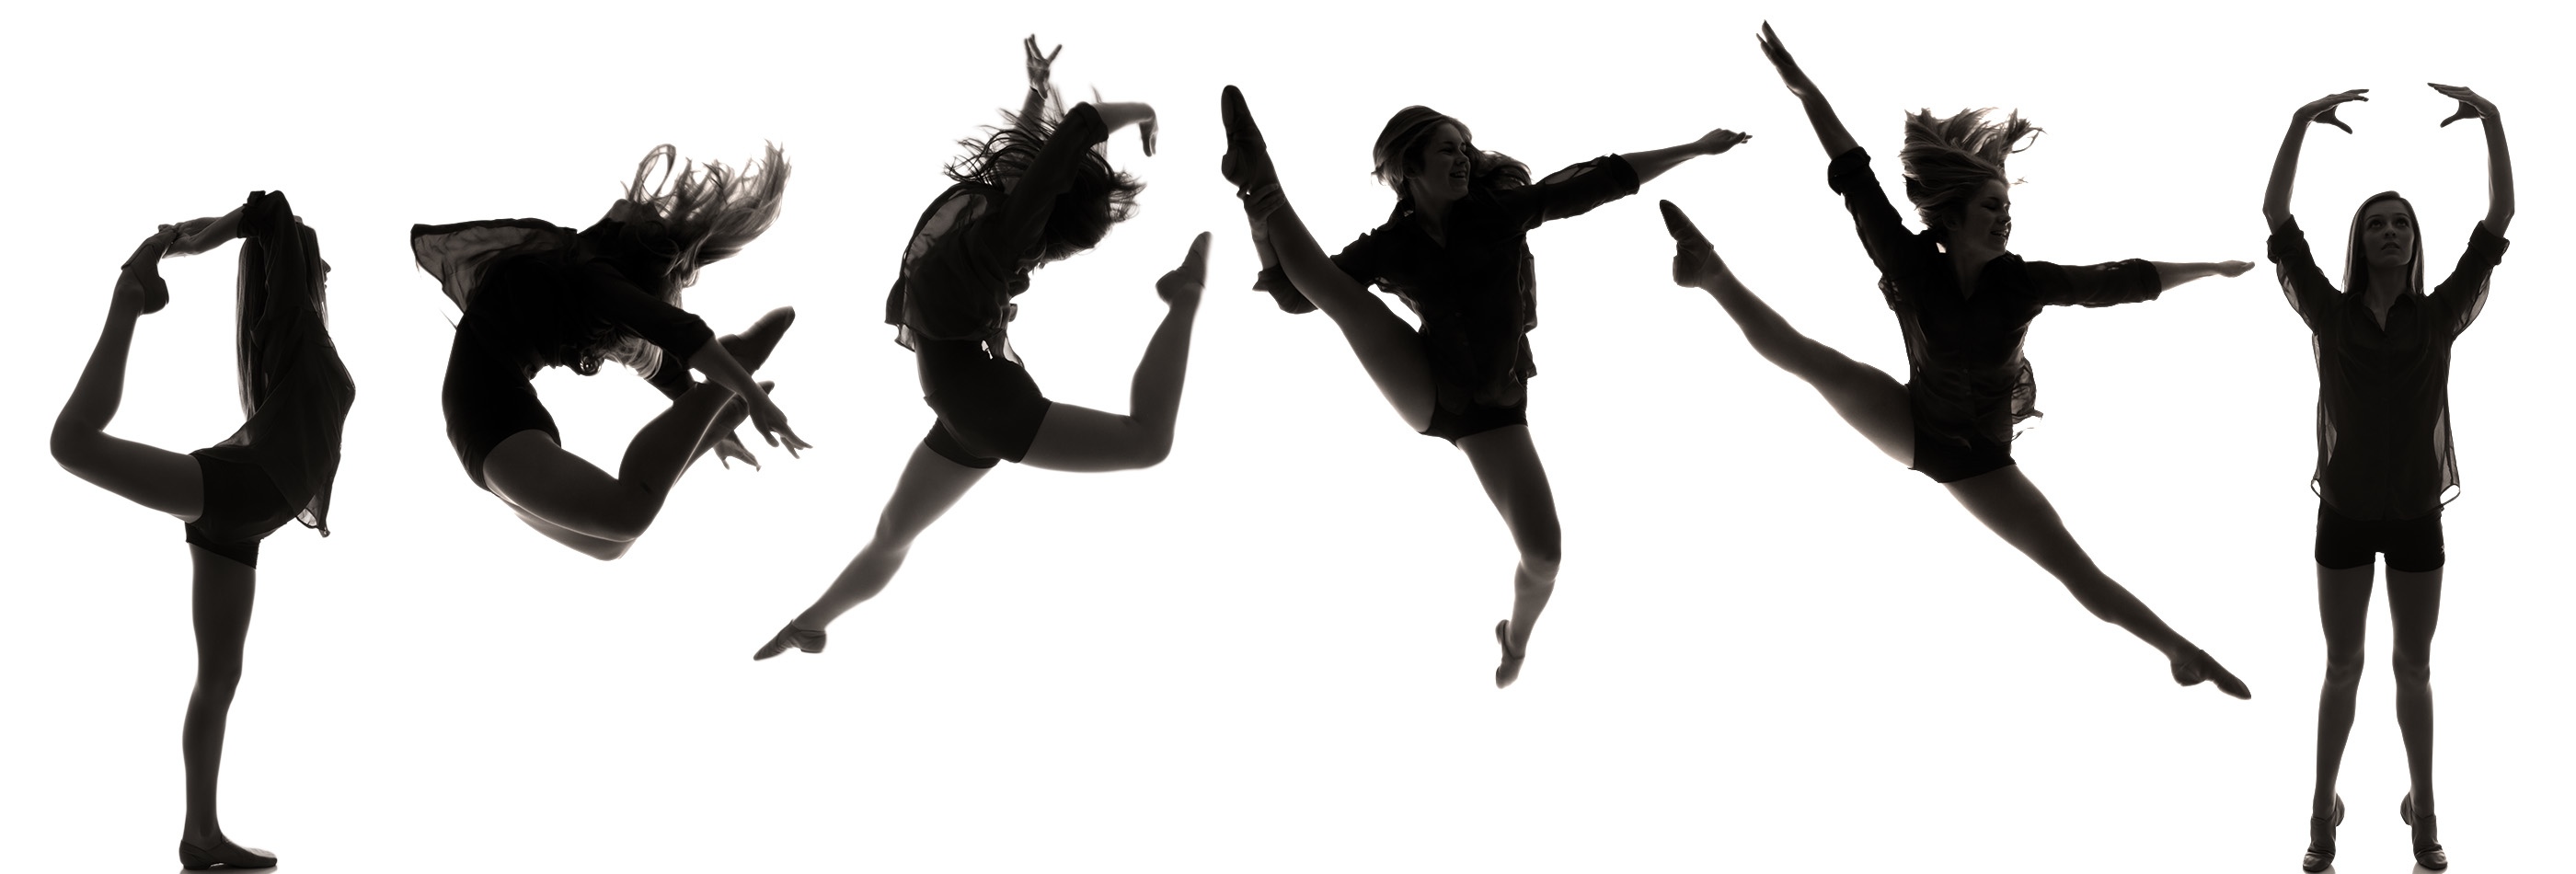 dance leap clipart - photo #38